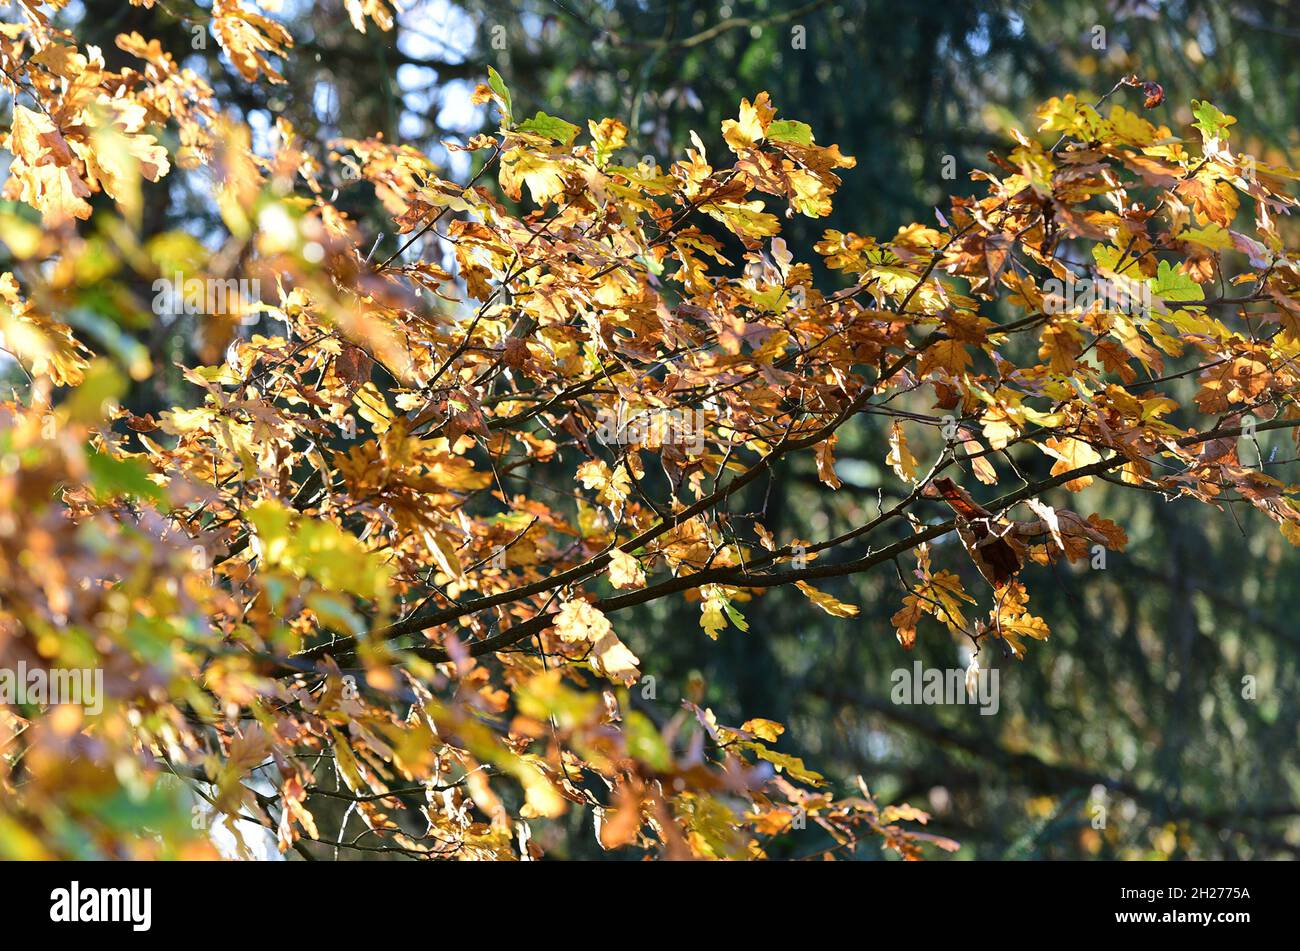 Herbstlicher Laubwald in Österreich, Europa - Autumn deciduous forest in Austria, Europe Stock Photo